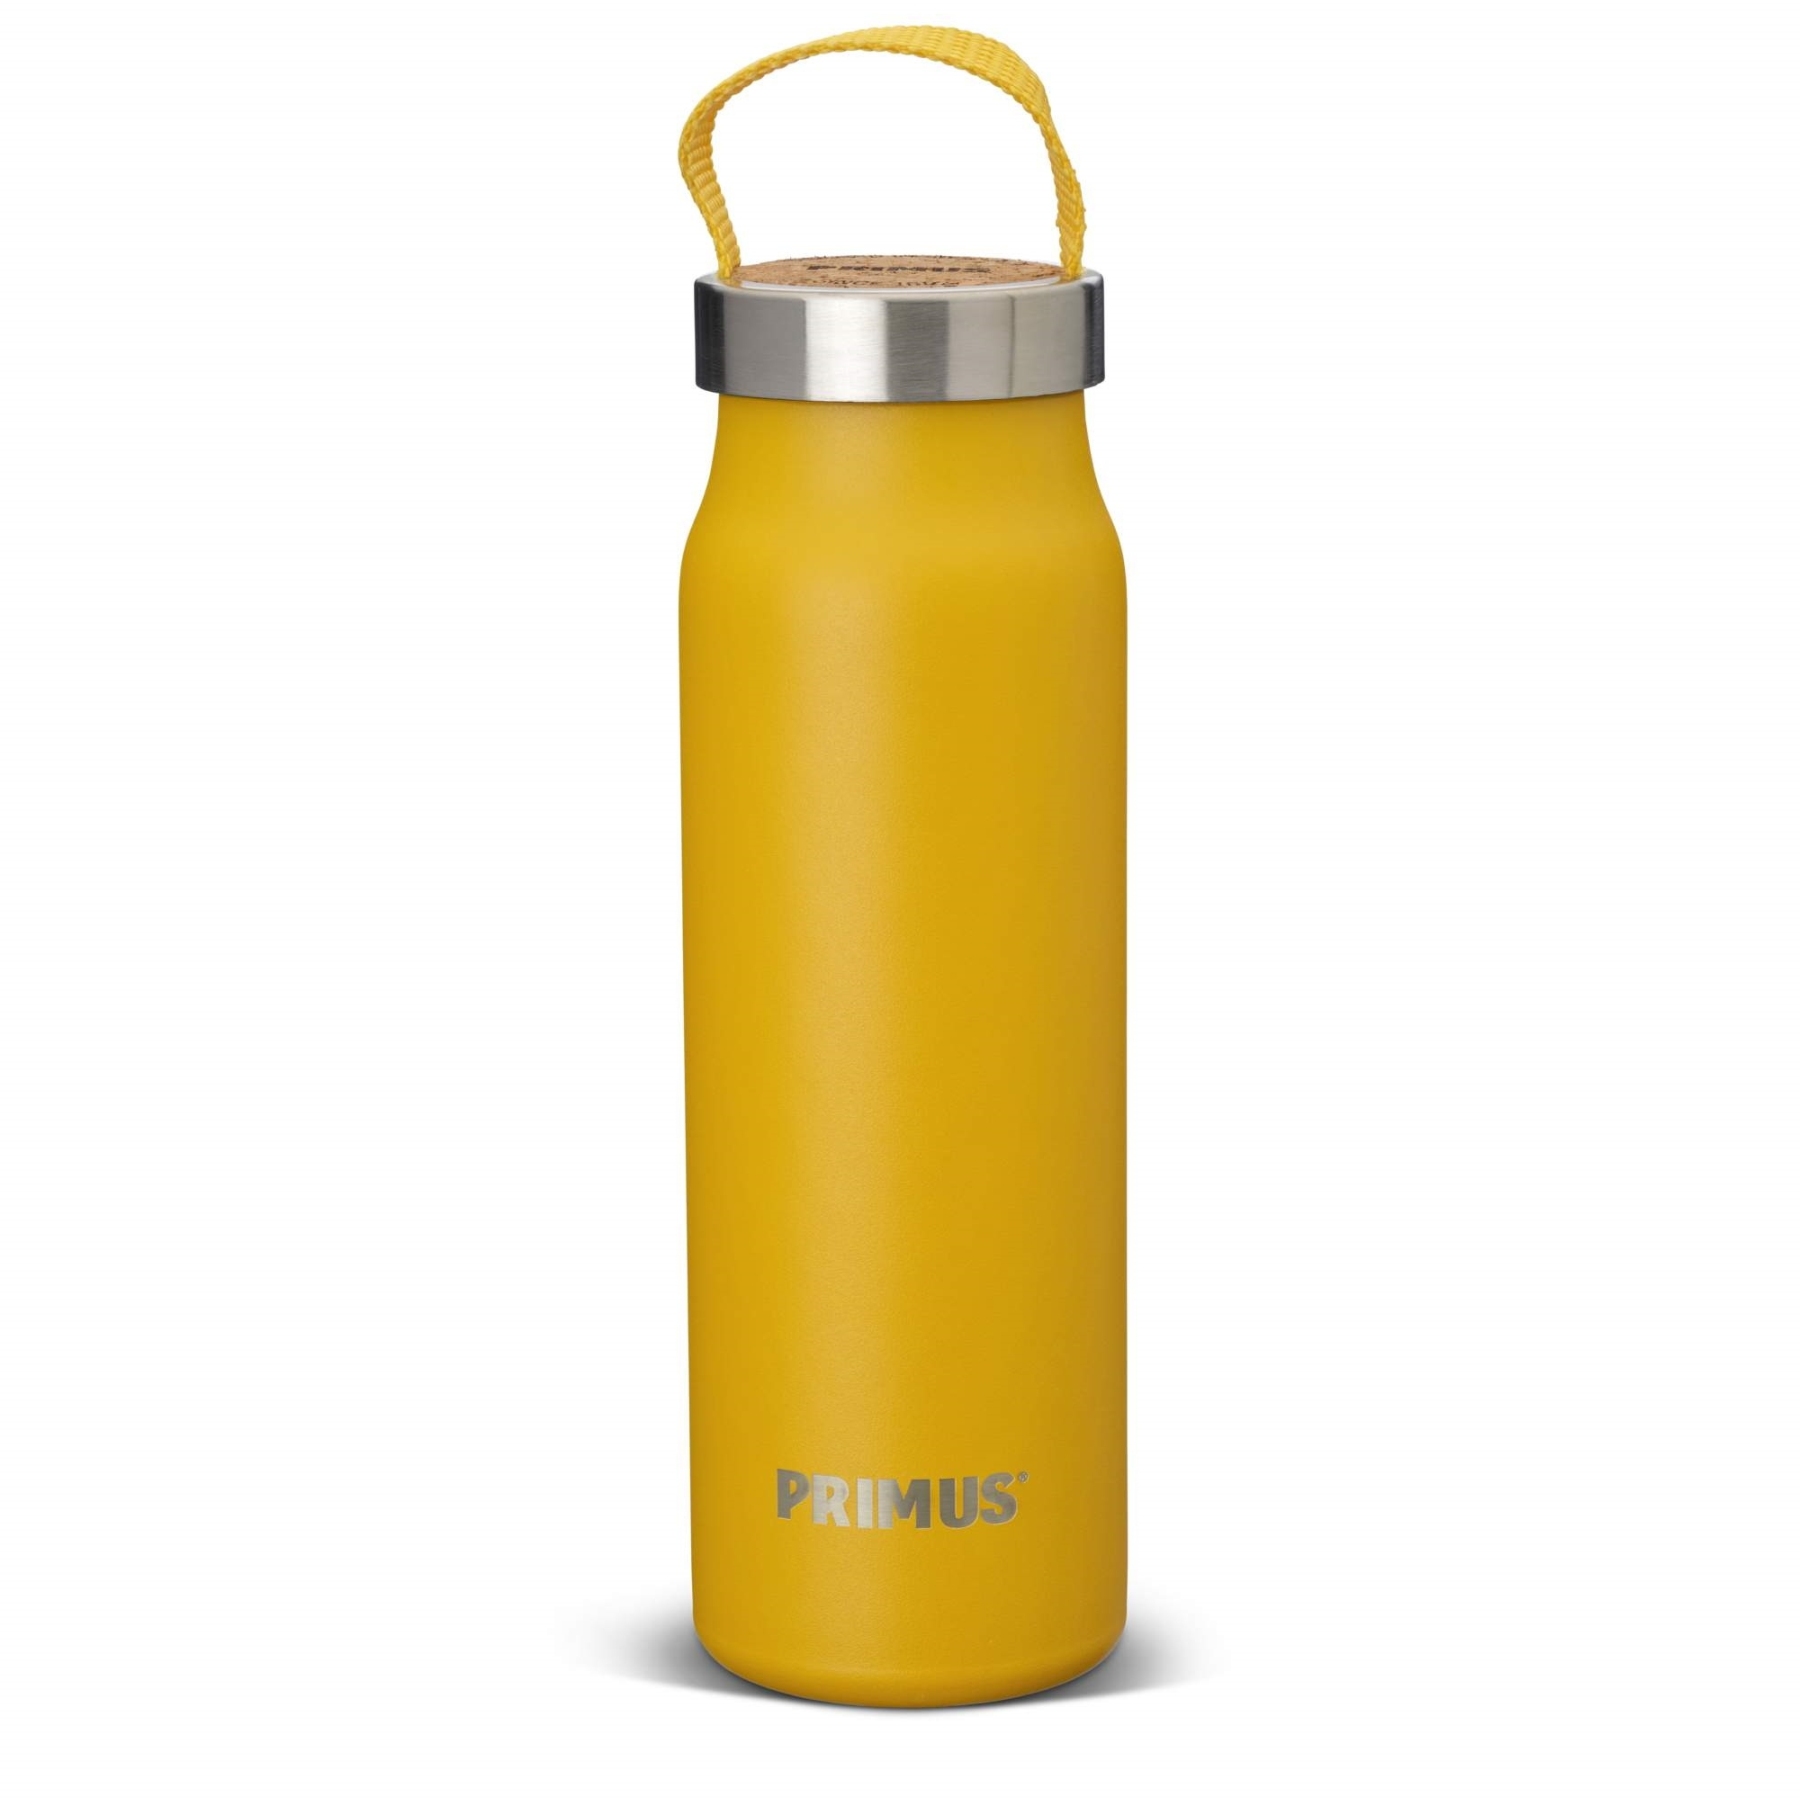 Produktbild von Primus Klunken Vakuum Trinkflasche 0.5 L - yellow